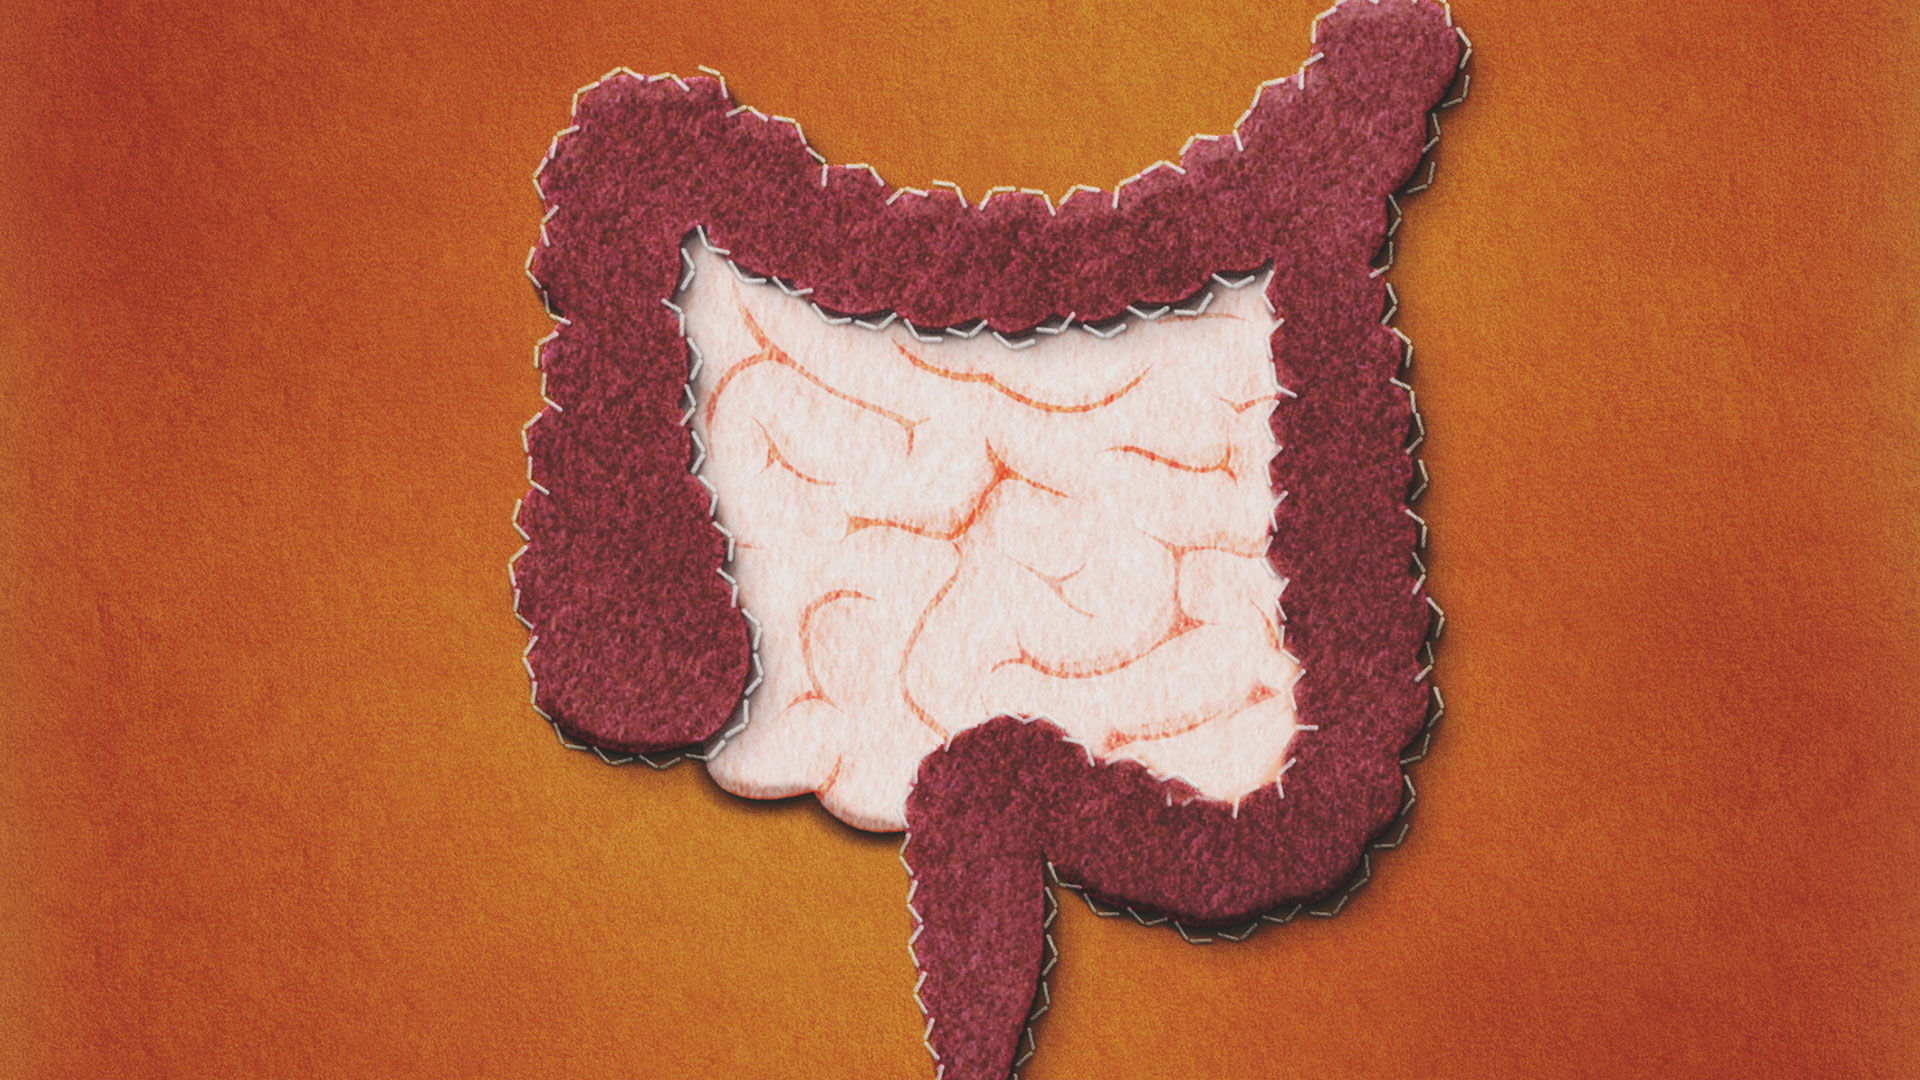 Las infecciones del tracto urinario, más comúnmente conocidas como ITU, pueden recibir distintos nombres en función de la parte del tracto urinario infectada: la cistitis afecta a la vejiga, la pielonefritis a los riñones y la uretritis al uréter y la uretra (Getty Images)